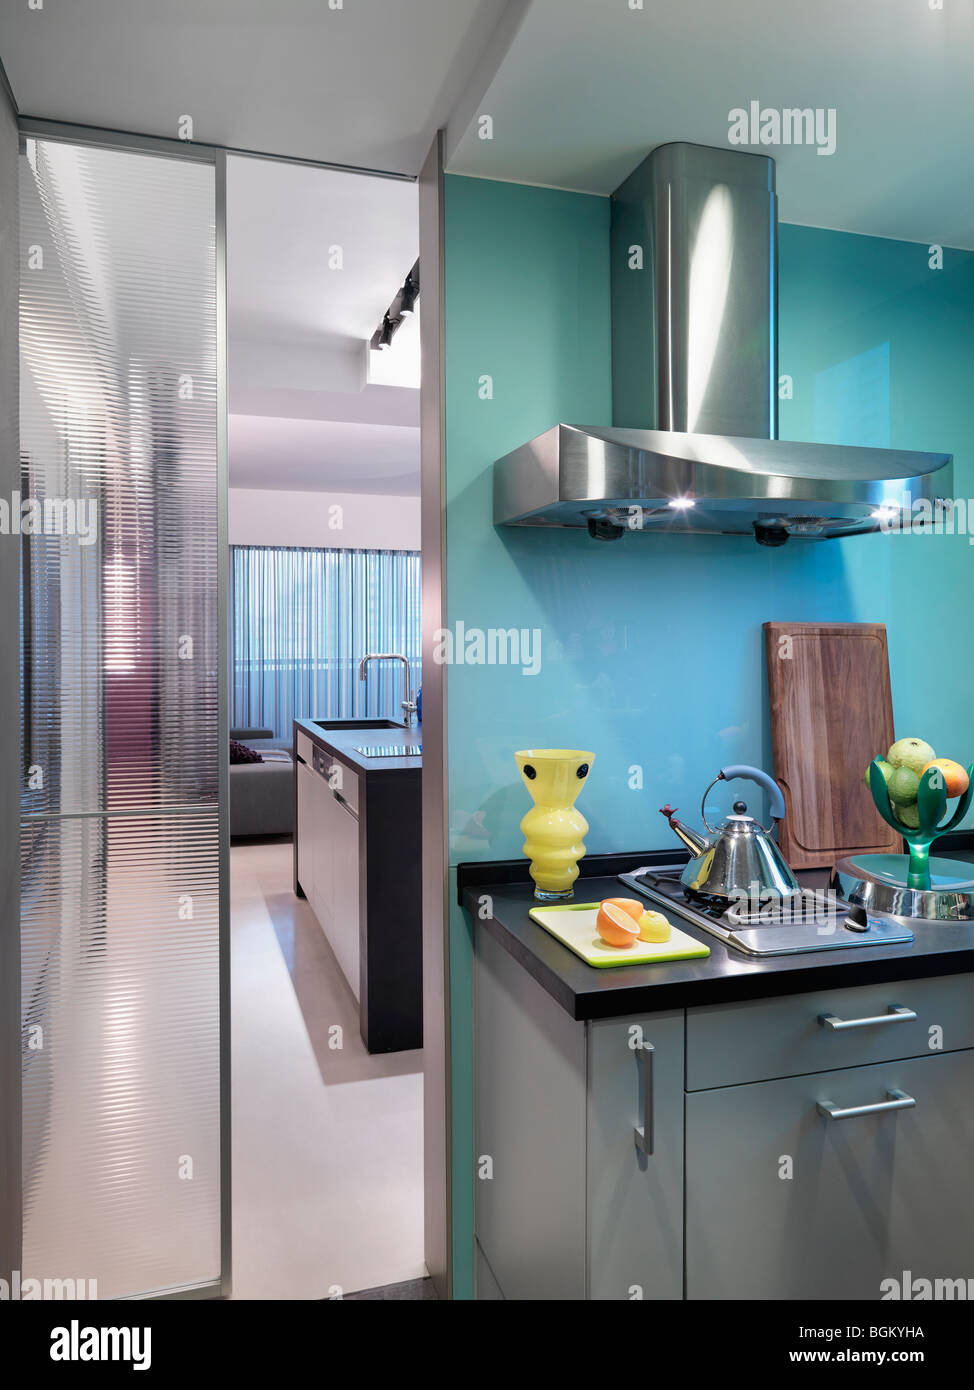 Comptoir et cuisinière dans une cuisine moderne bleue Banque D'Images